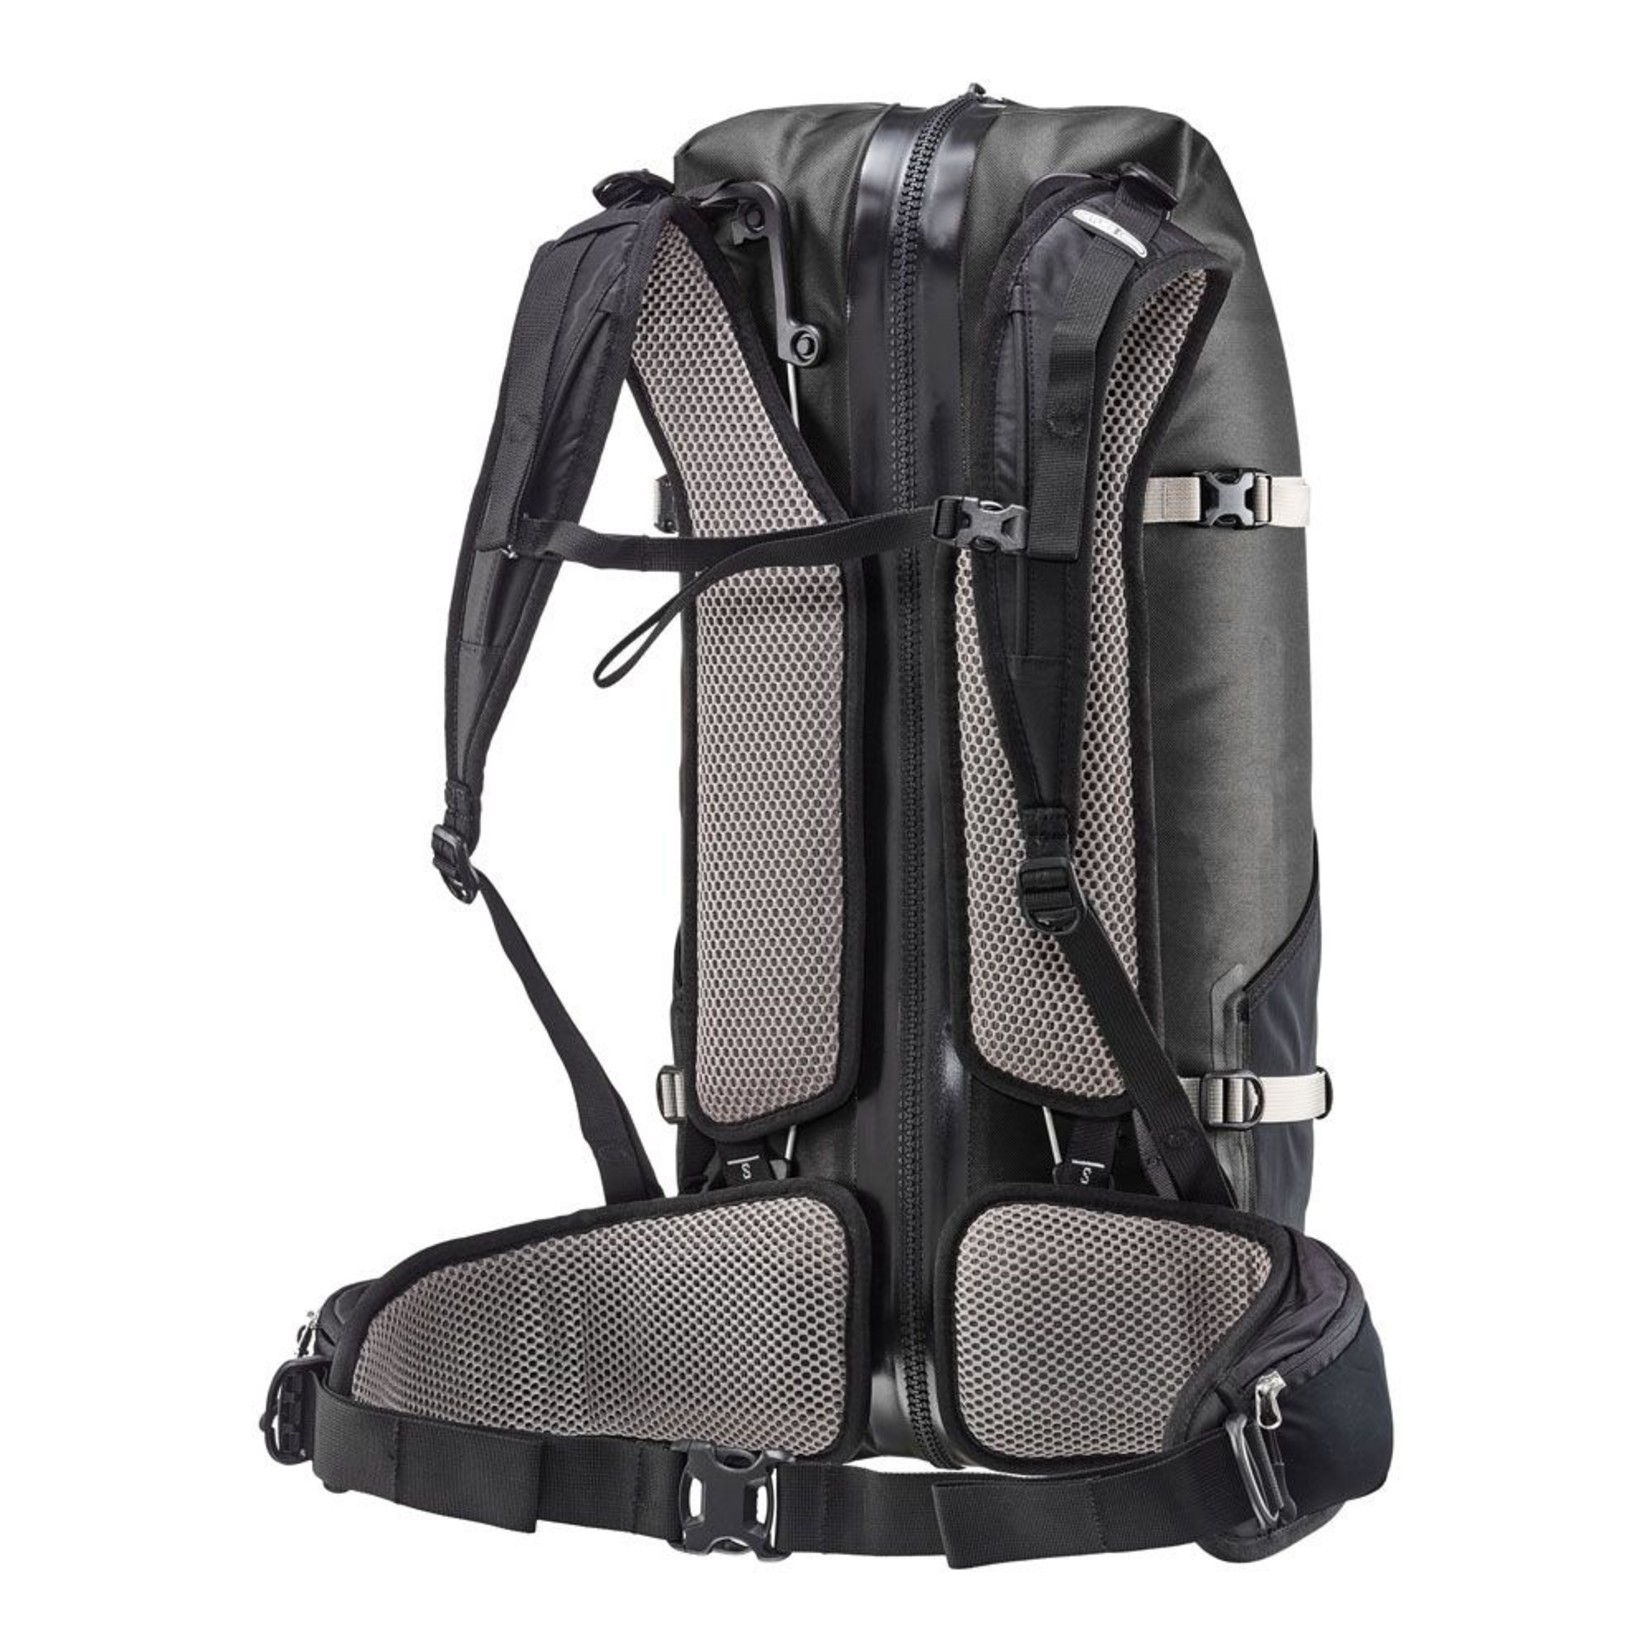 Ortlieb New Ortlieb Atrack Waterproof Backpack Travel Bag R7054 - 35L - Black